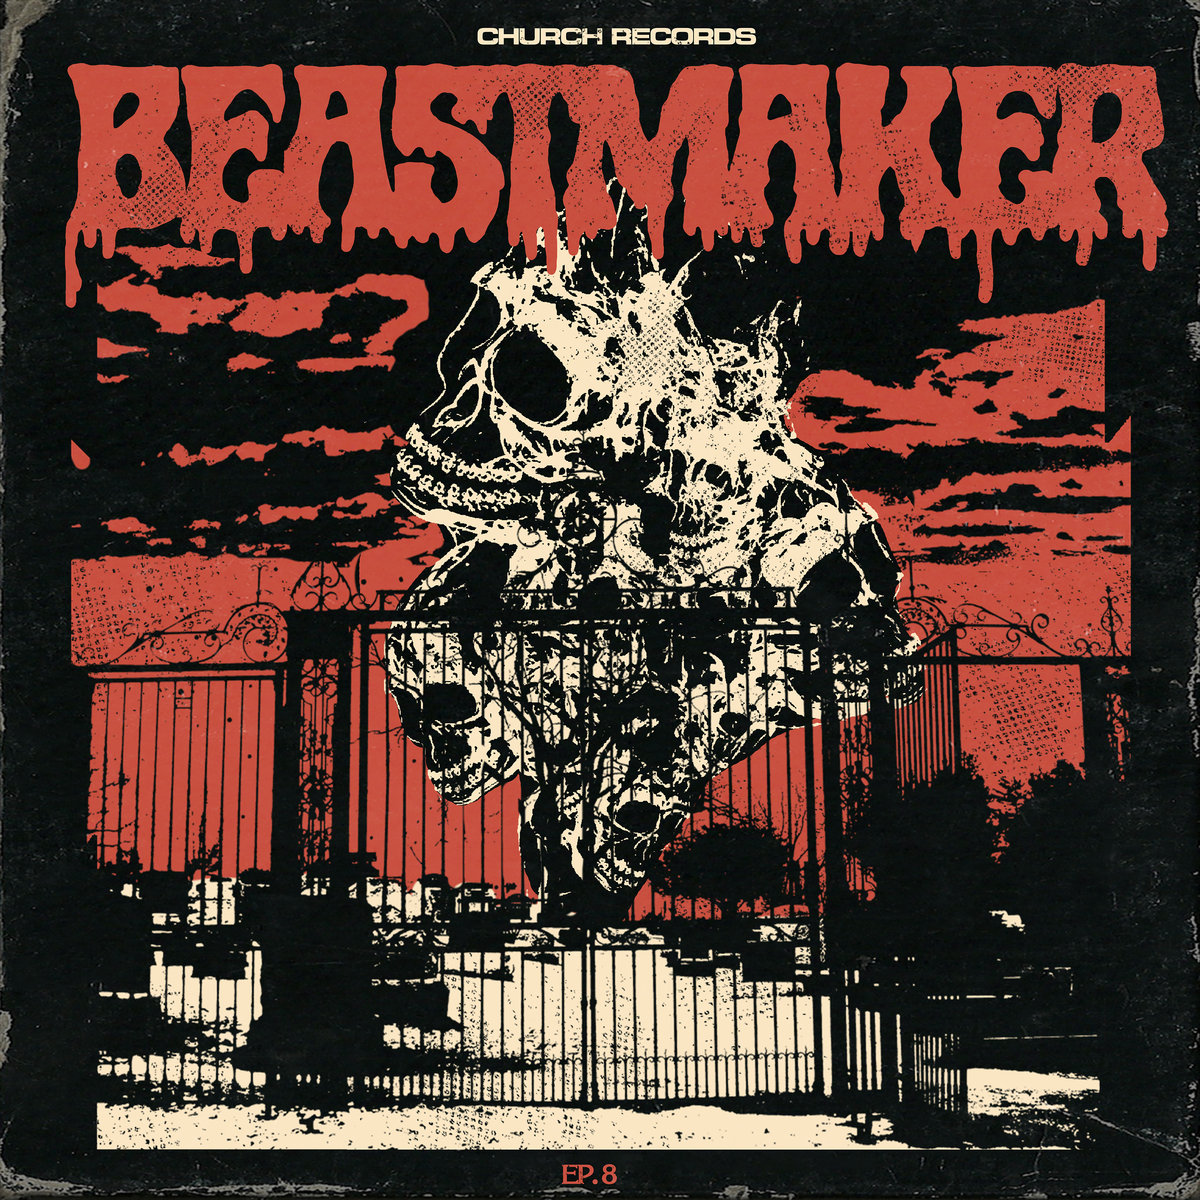 BEASTMAKER - EP. 8 cover 